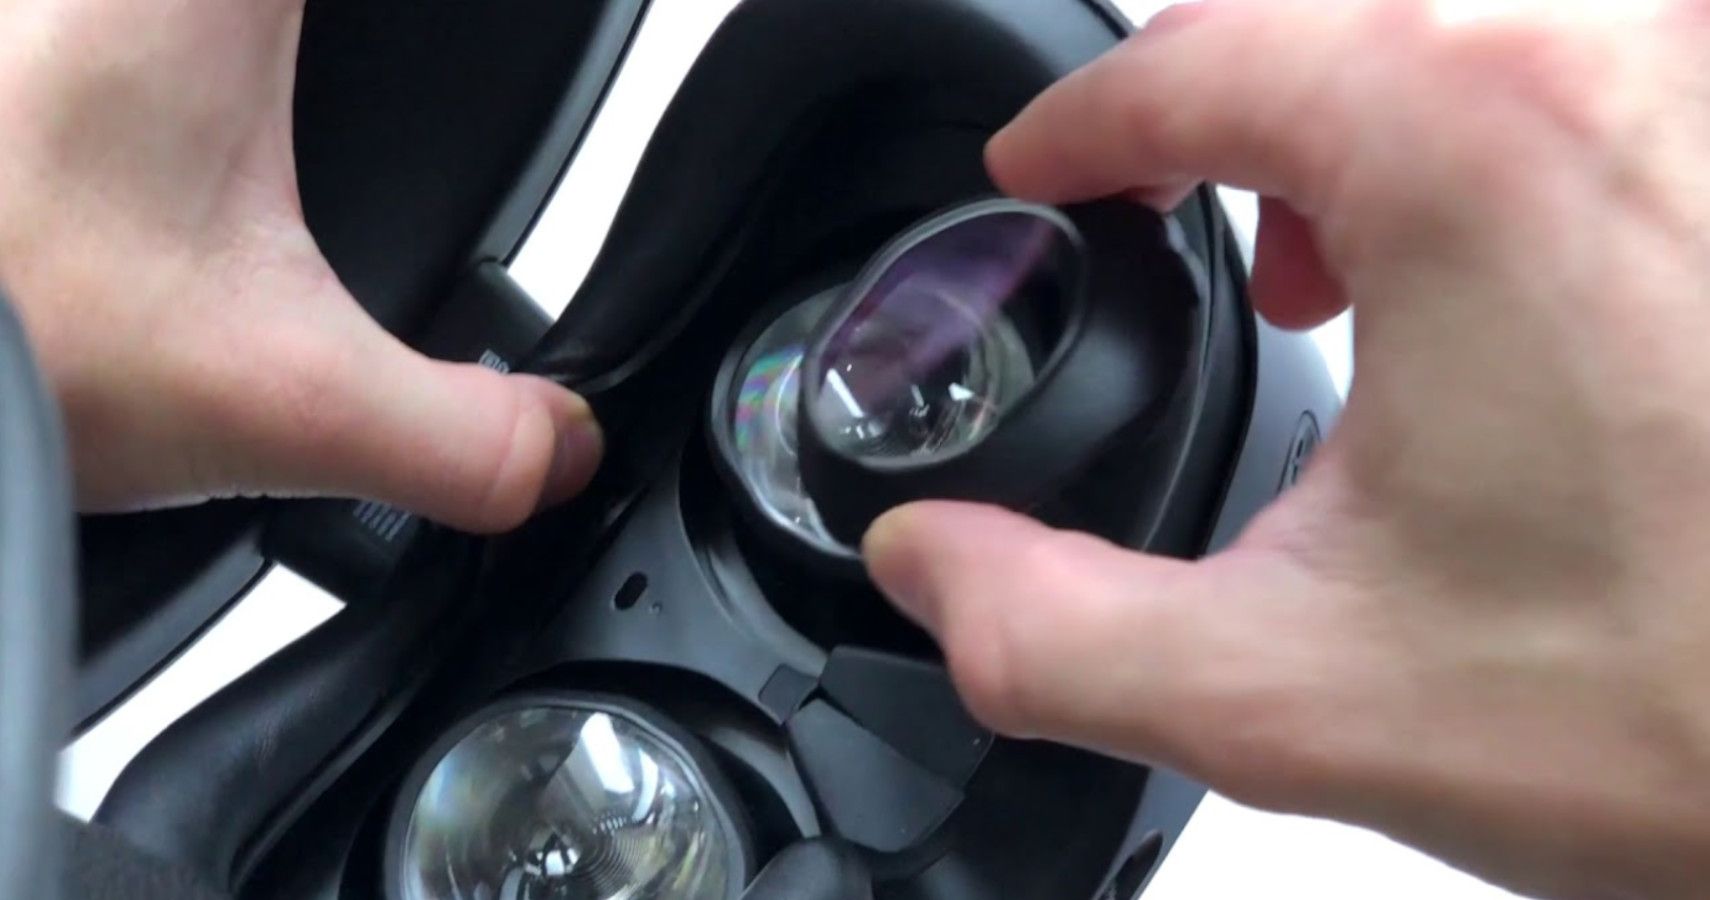 PlayStation VR 2 (PSVR2) Prescription Lenses - VR Optician